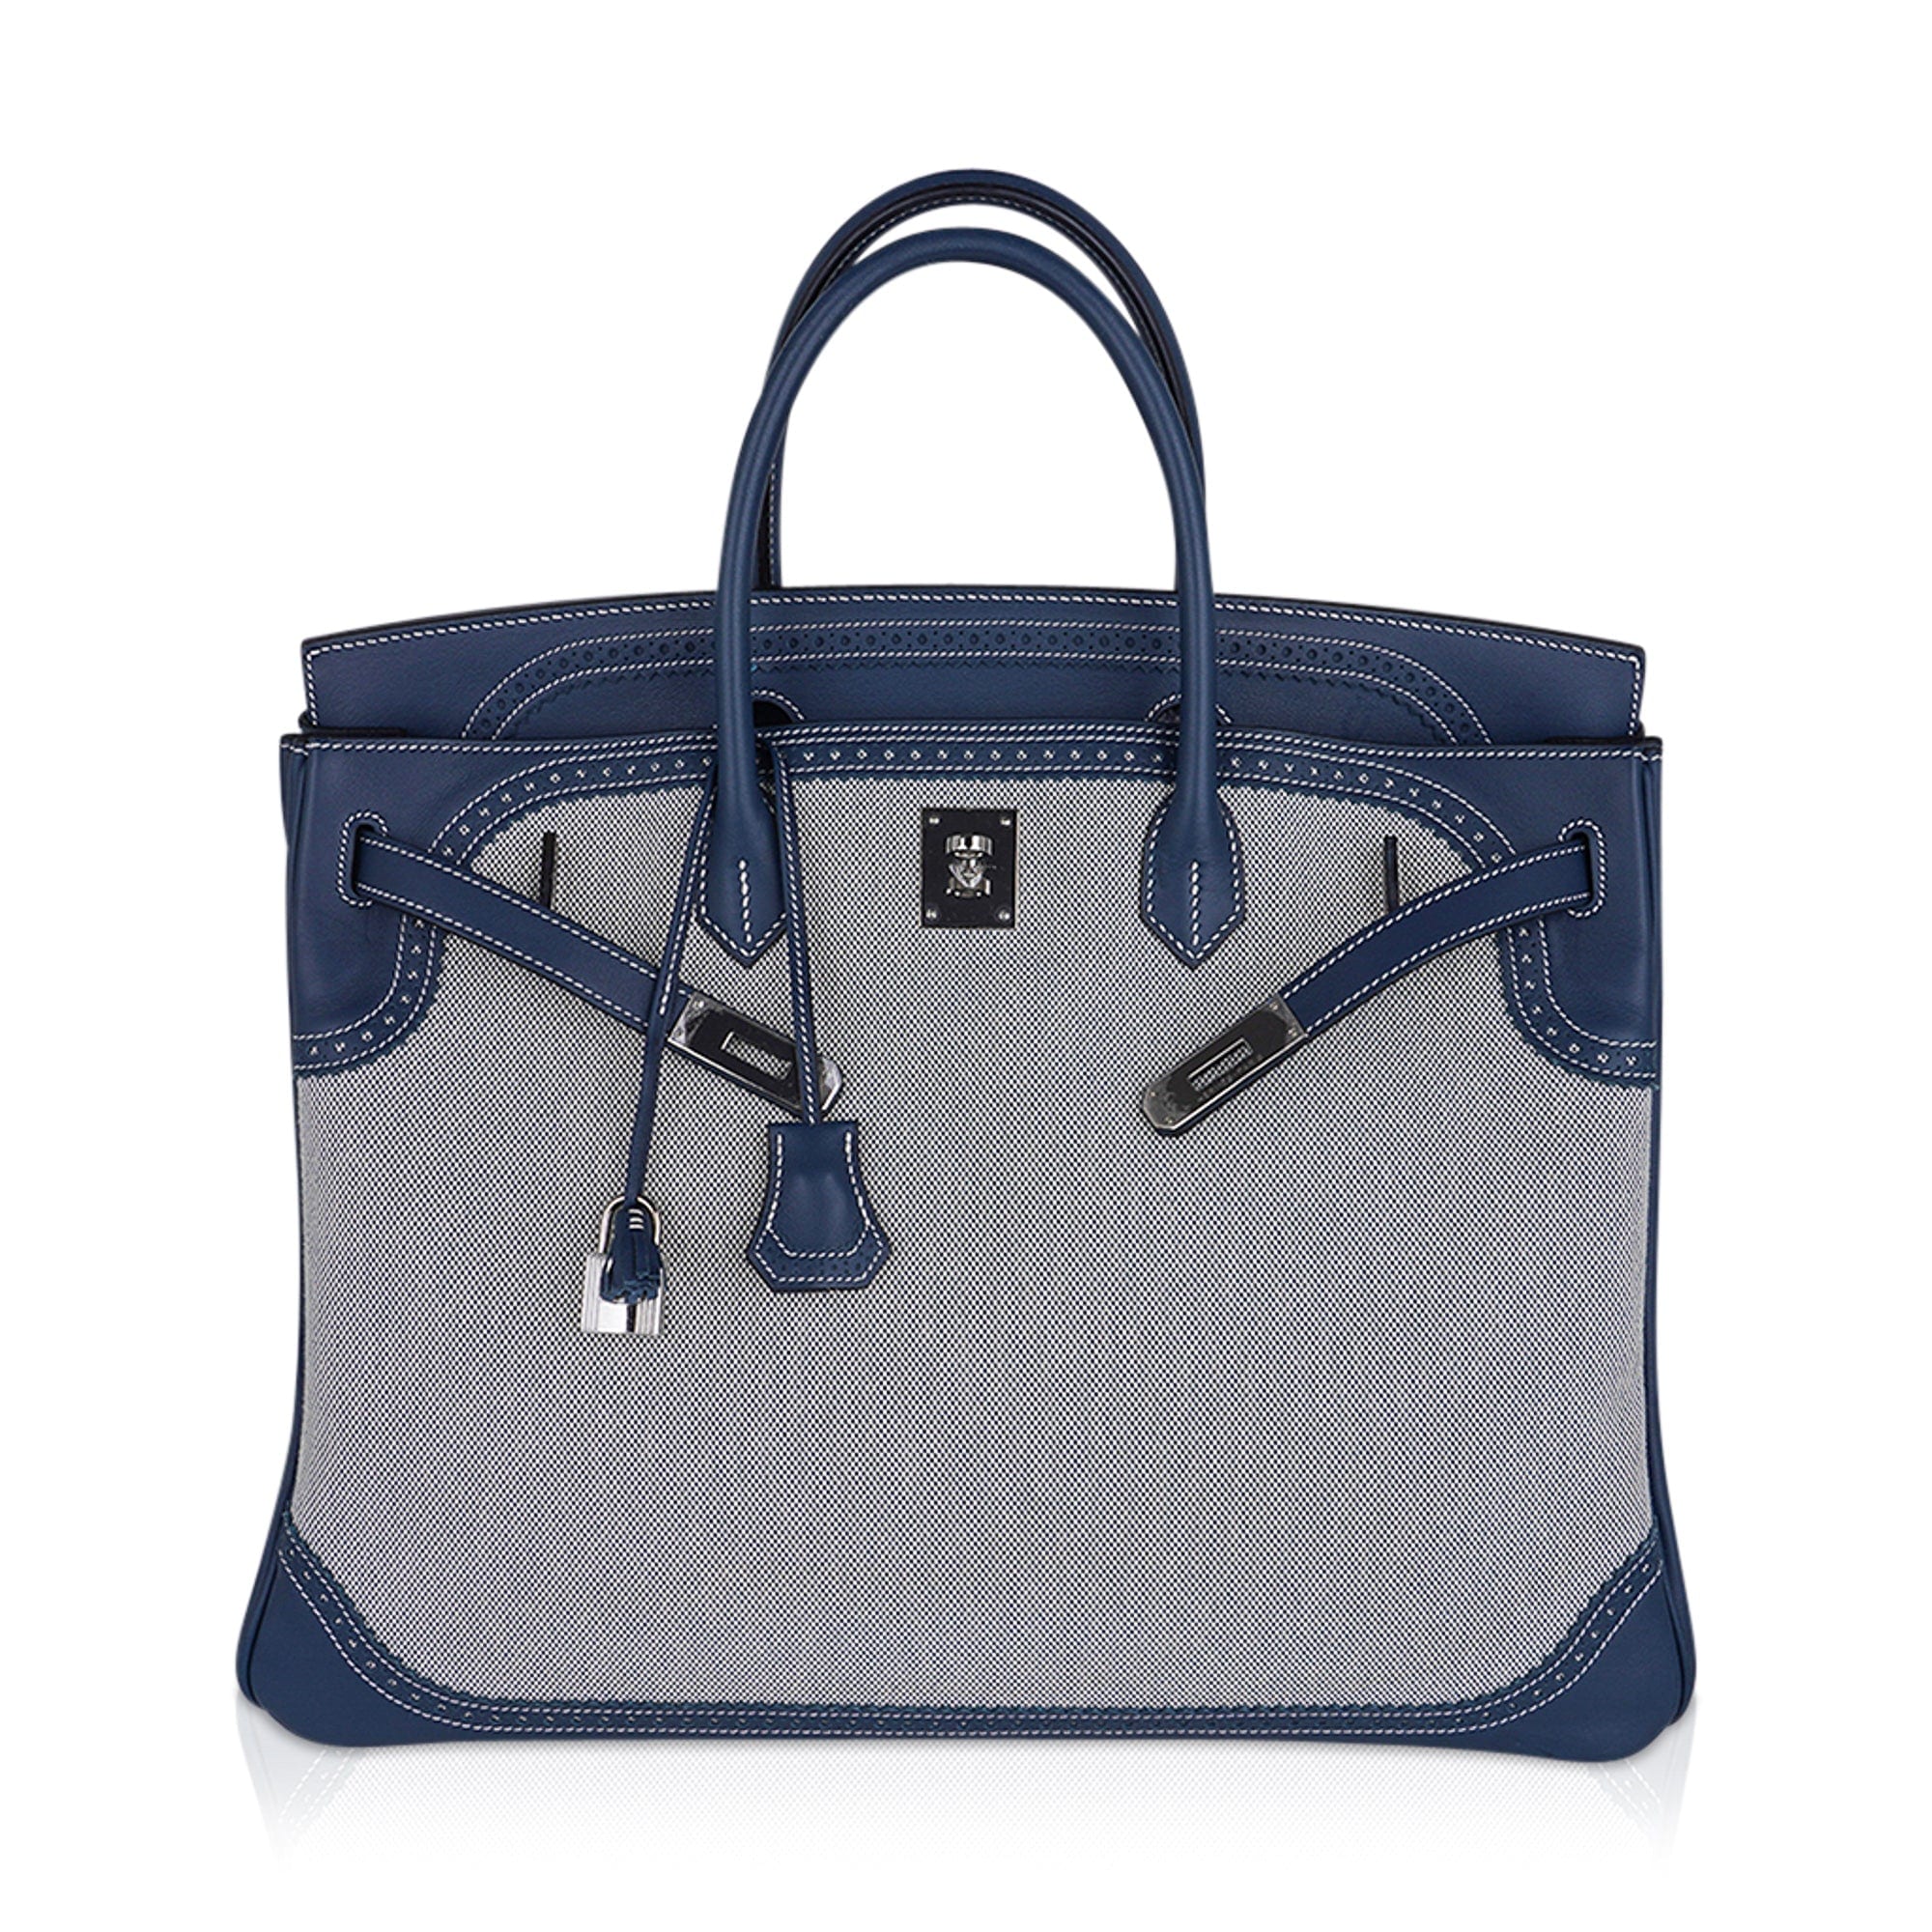 Hermes Birkin Limited Edition 40 Ghillies Bag Blue de Prusse Blue